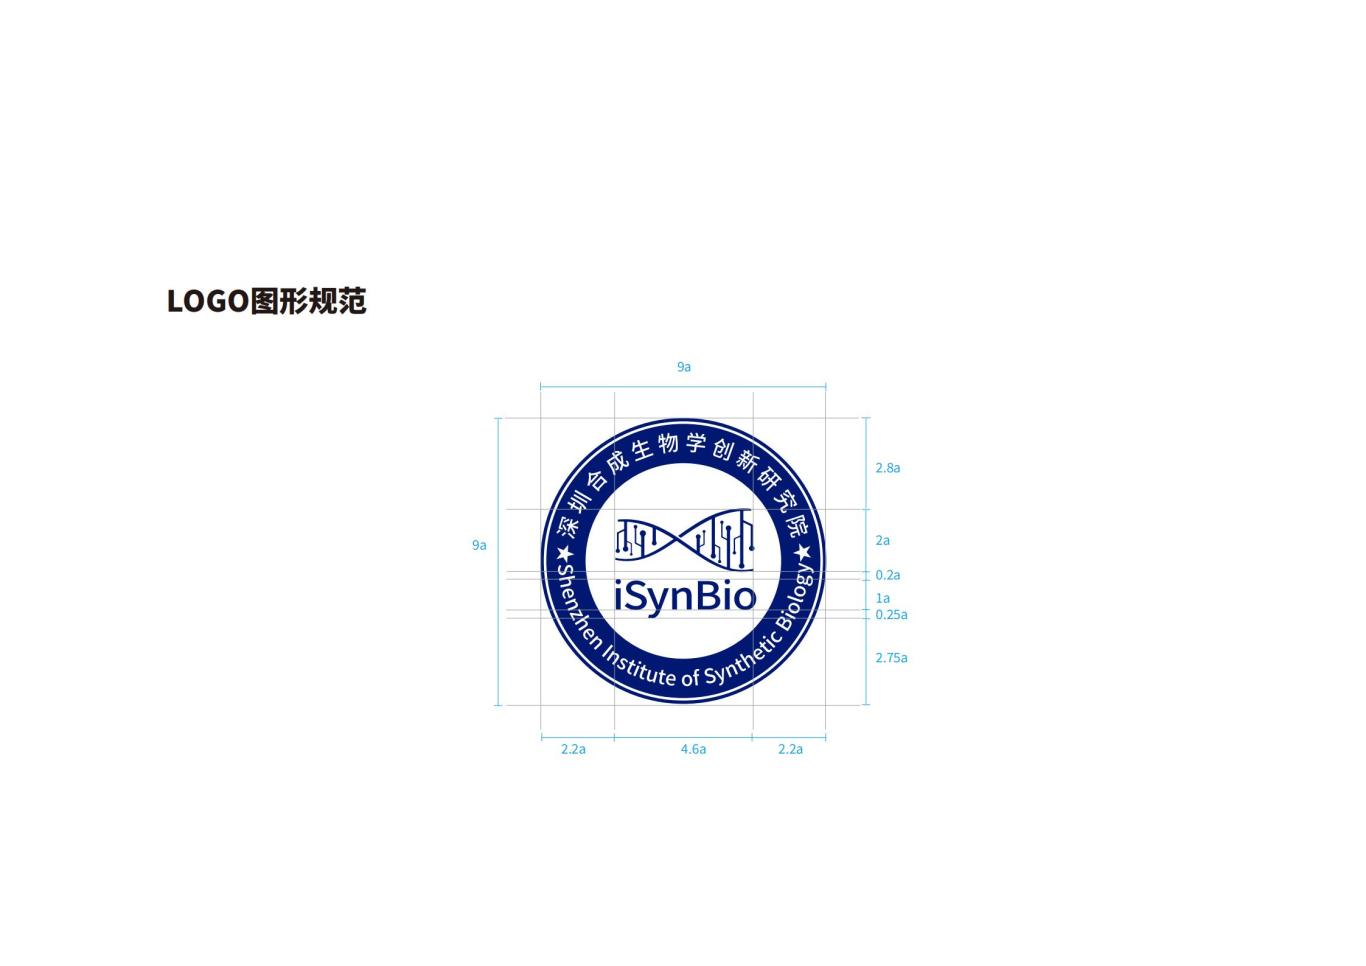 深圳合成生物学创新研究院品牌设计规范图8